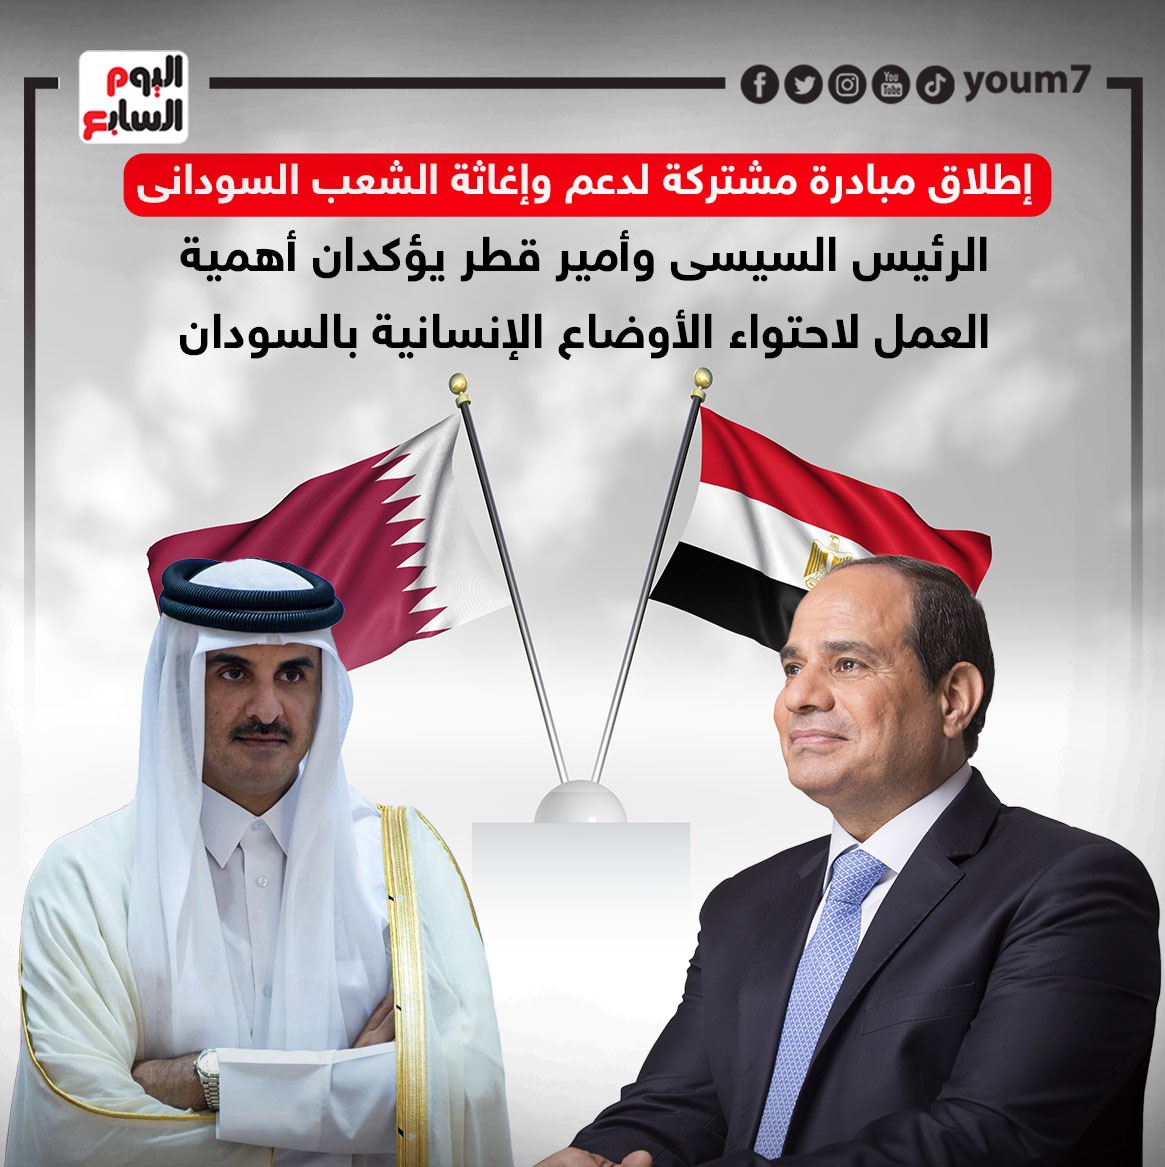 الرئيس السيسى وأمير قطر يؤكدان أهمية العمل لاحتواء الأوضاع الإنسانية بالسودان